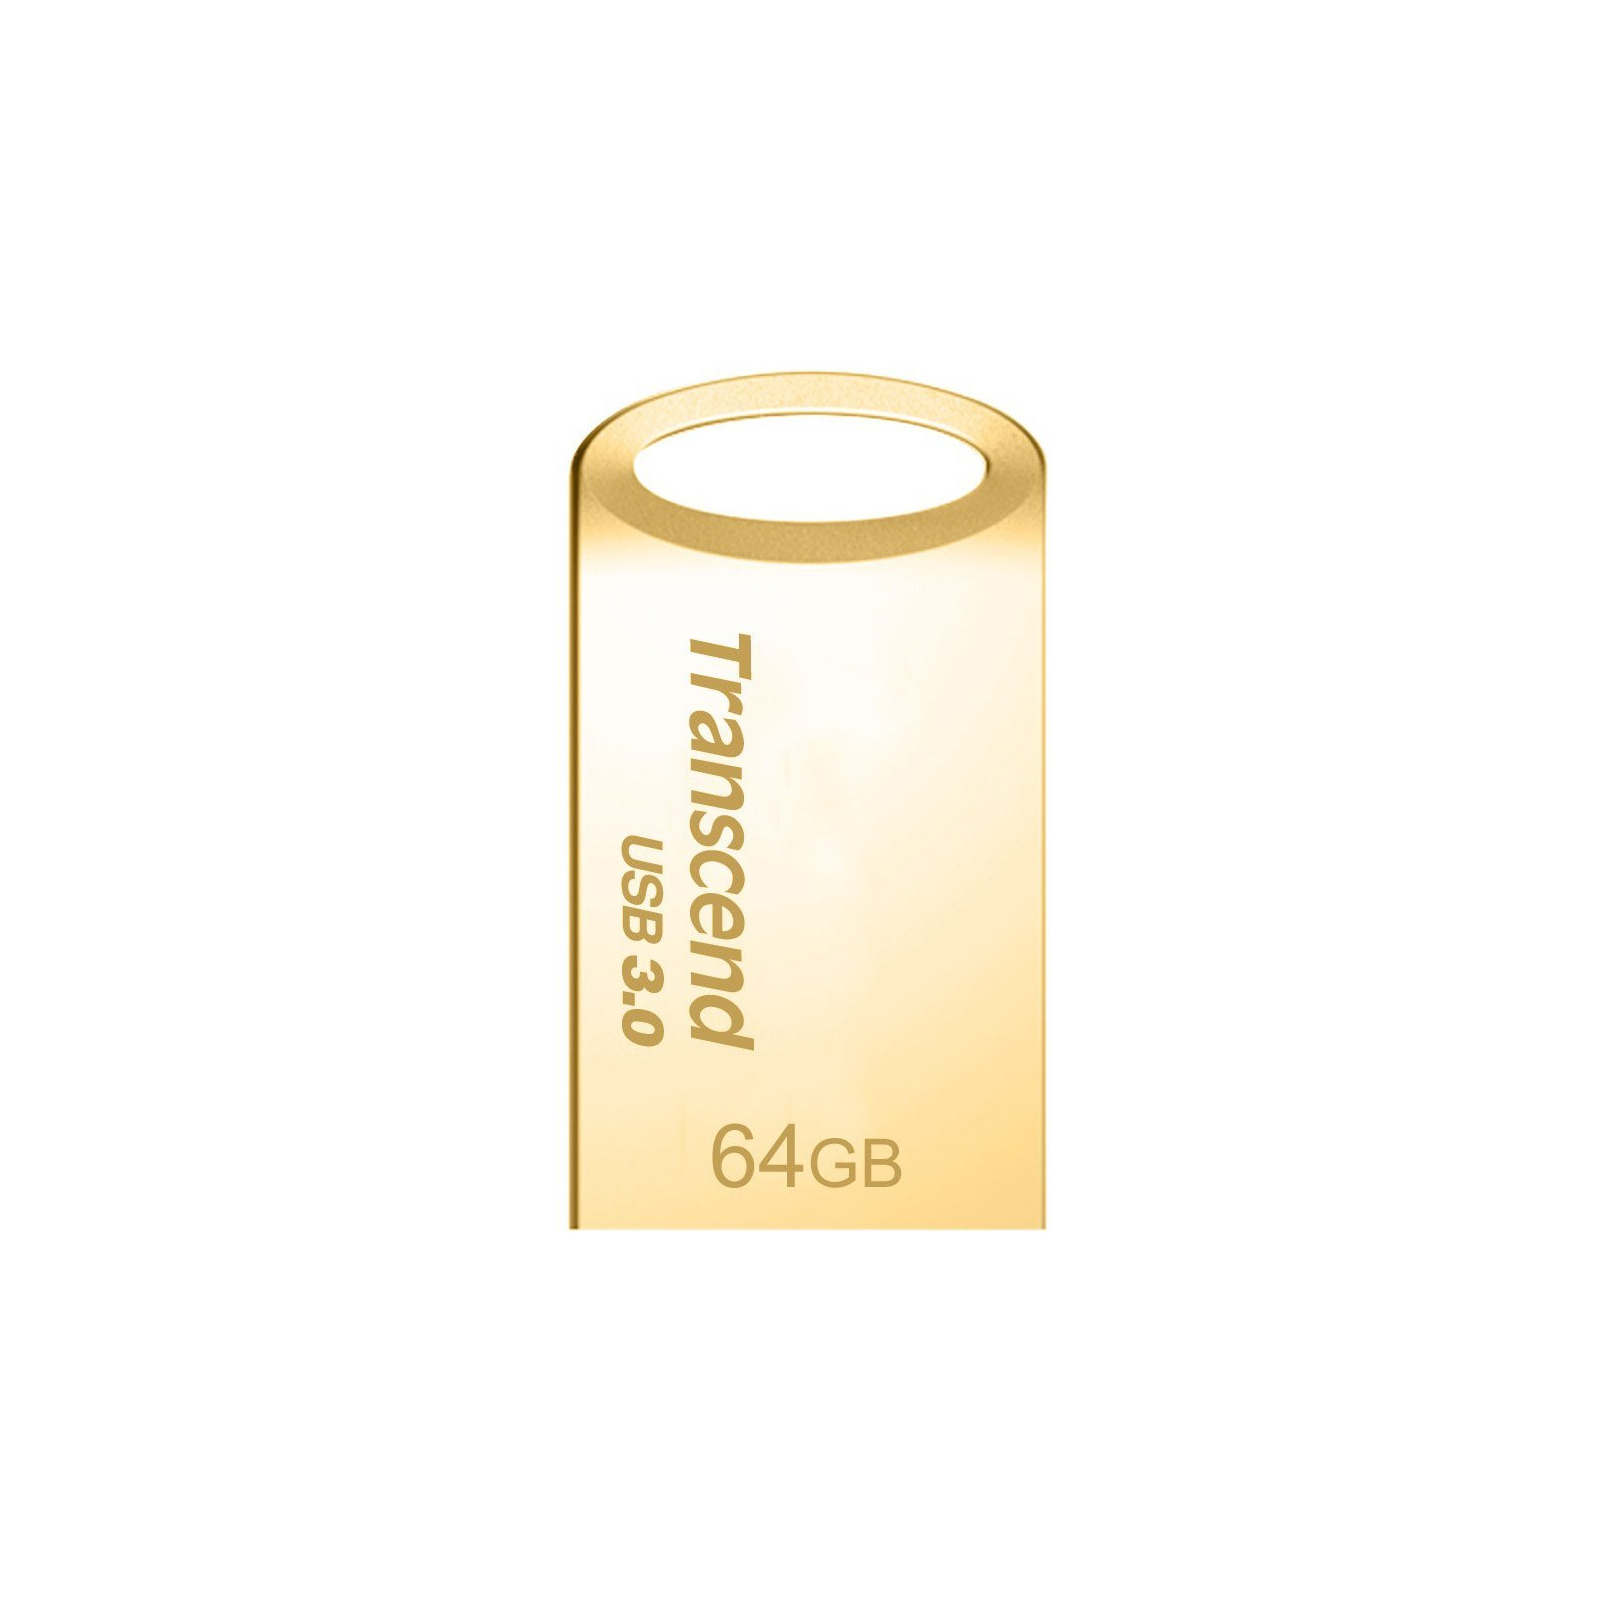 USB флеш накопичувач Transcend 64GB JetFlash 710 Metal Gold USB 3.0 (TS64GJF710G)